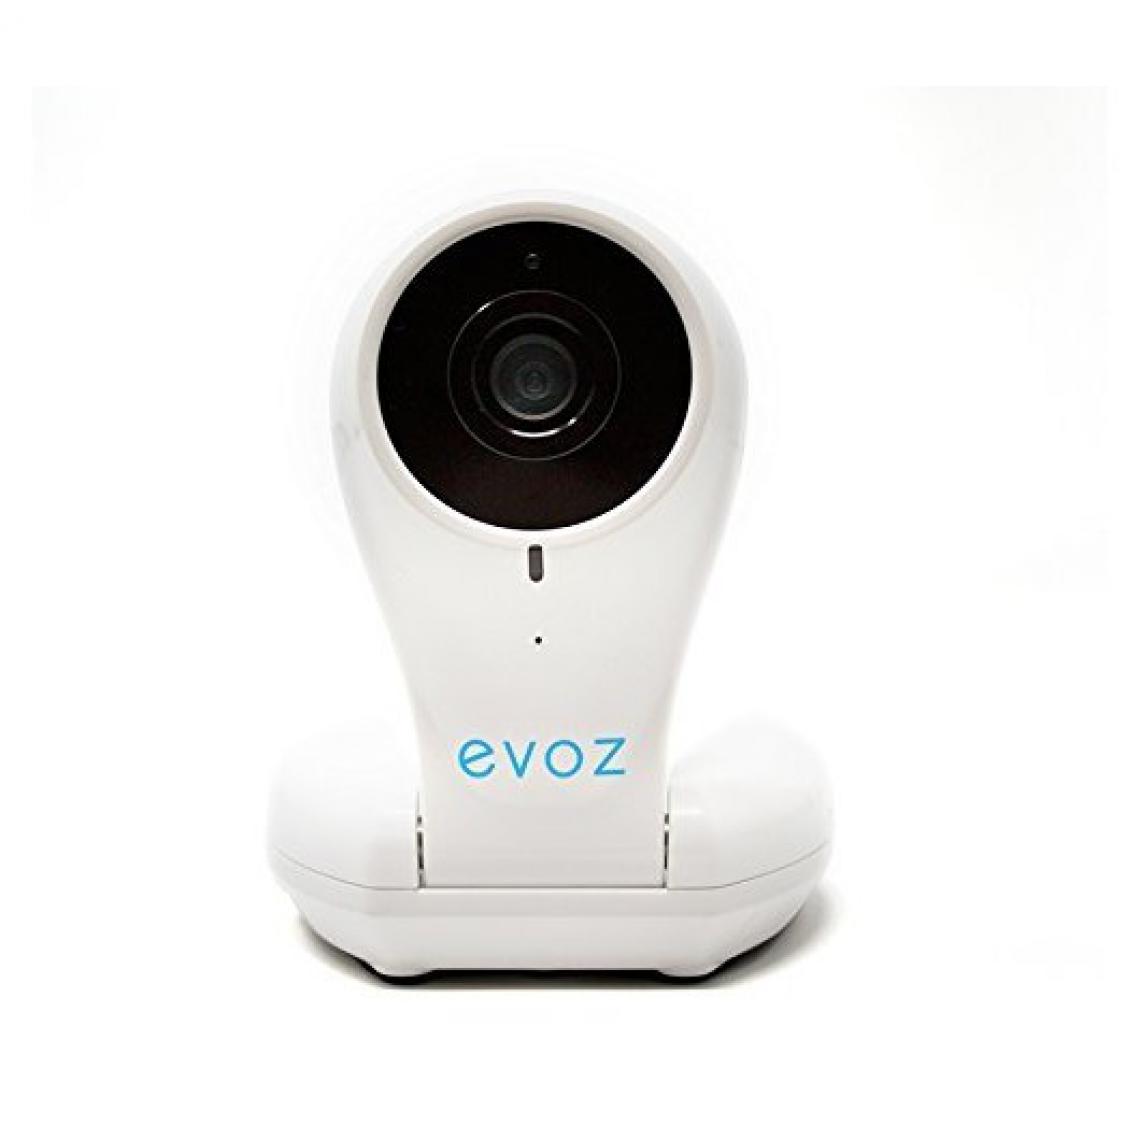 Evoz - Evoz Vision, être connecté avec votre bébé - Caméra de surveillance connectée